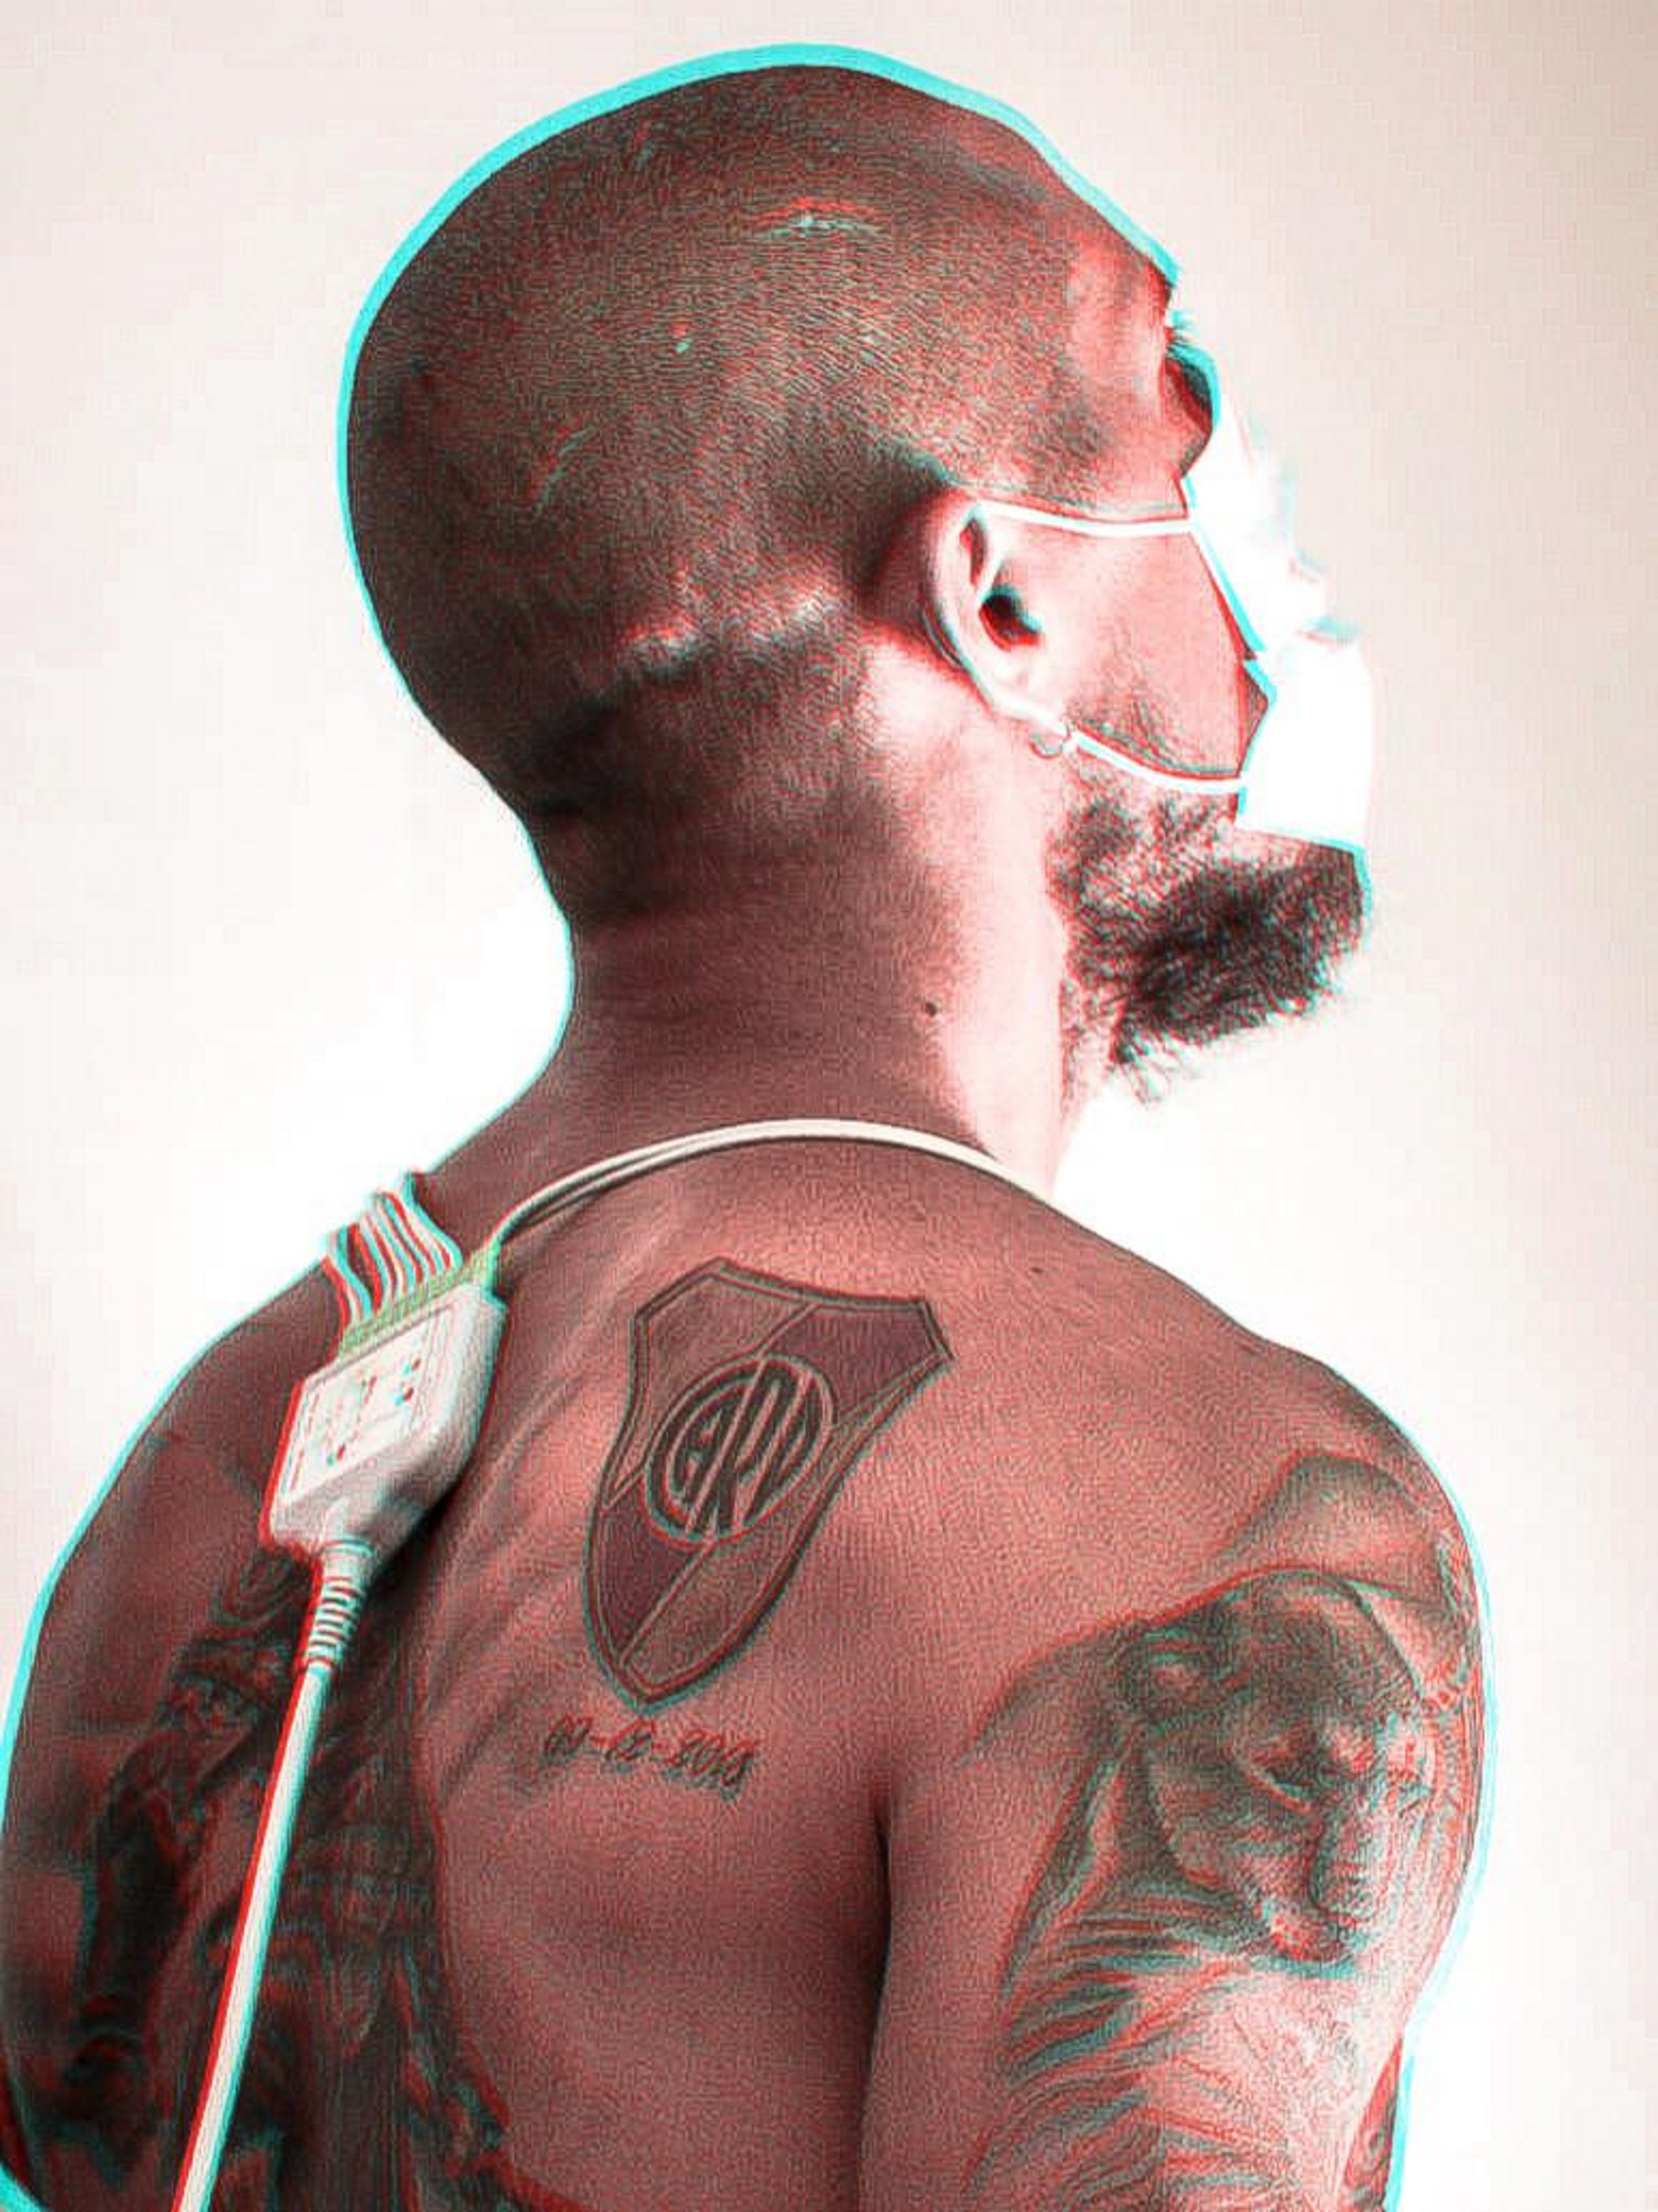 La foto que compartió River del tatuaje al detalle